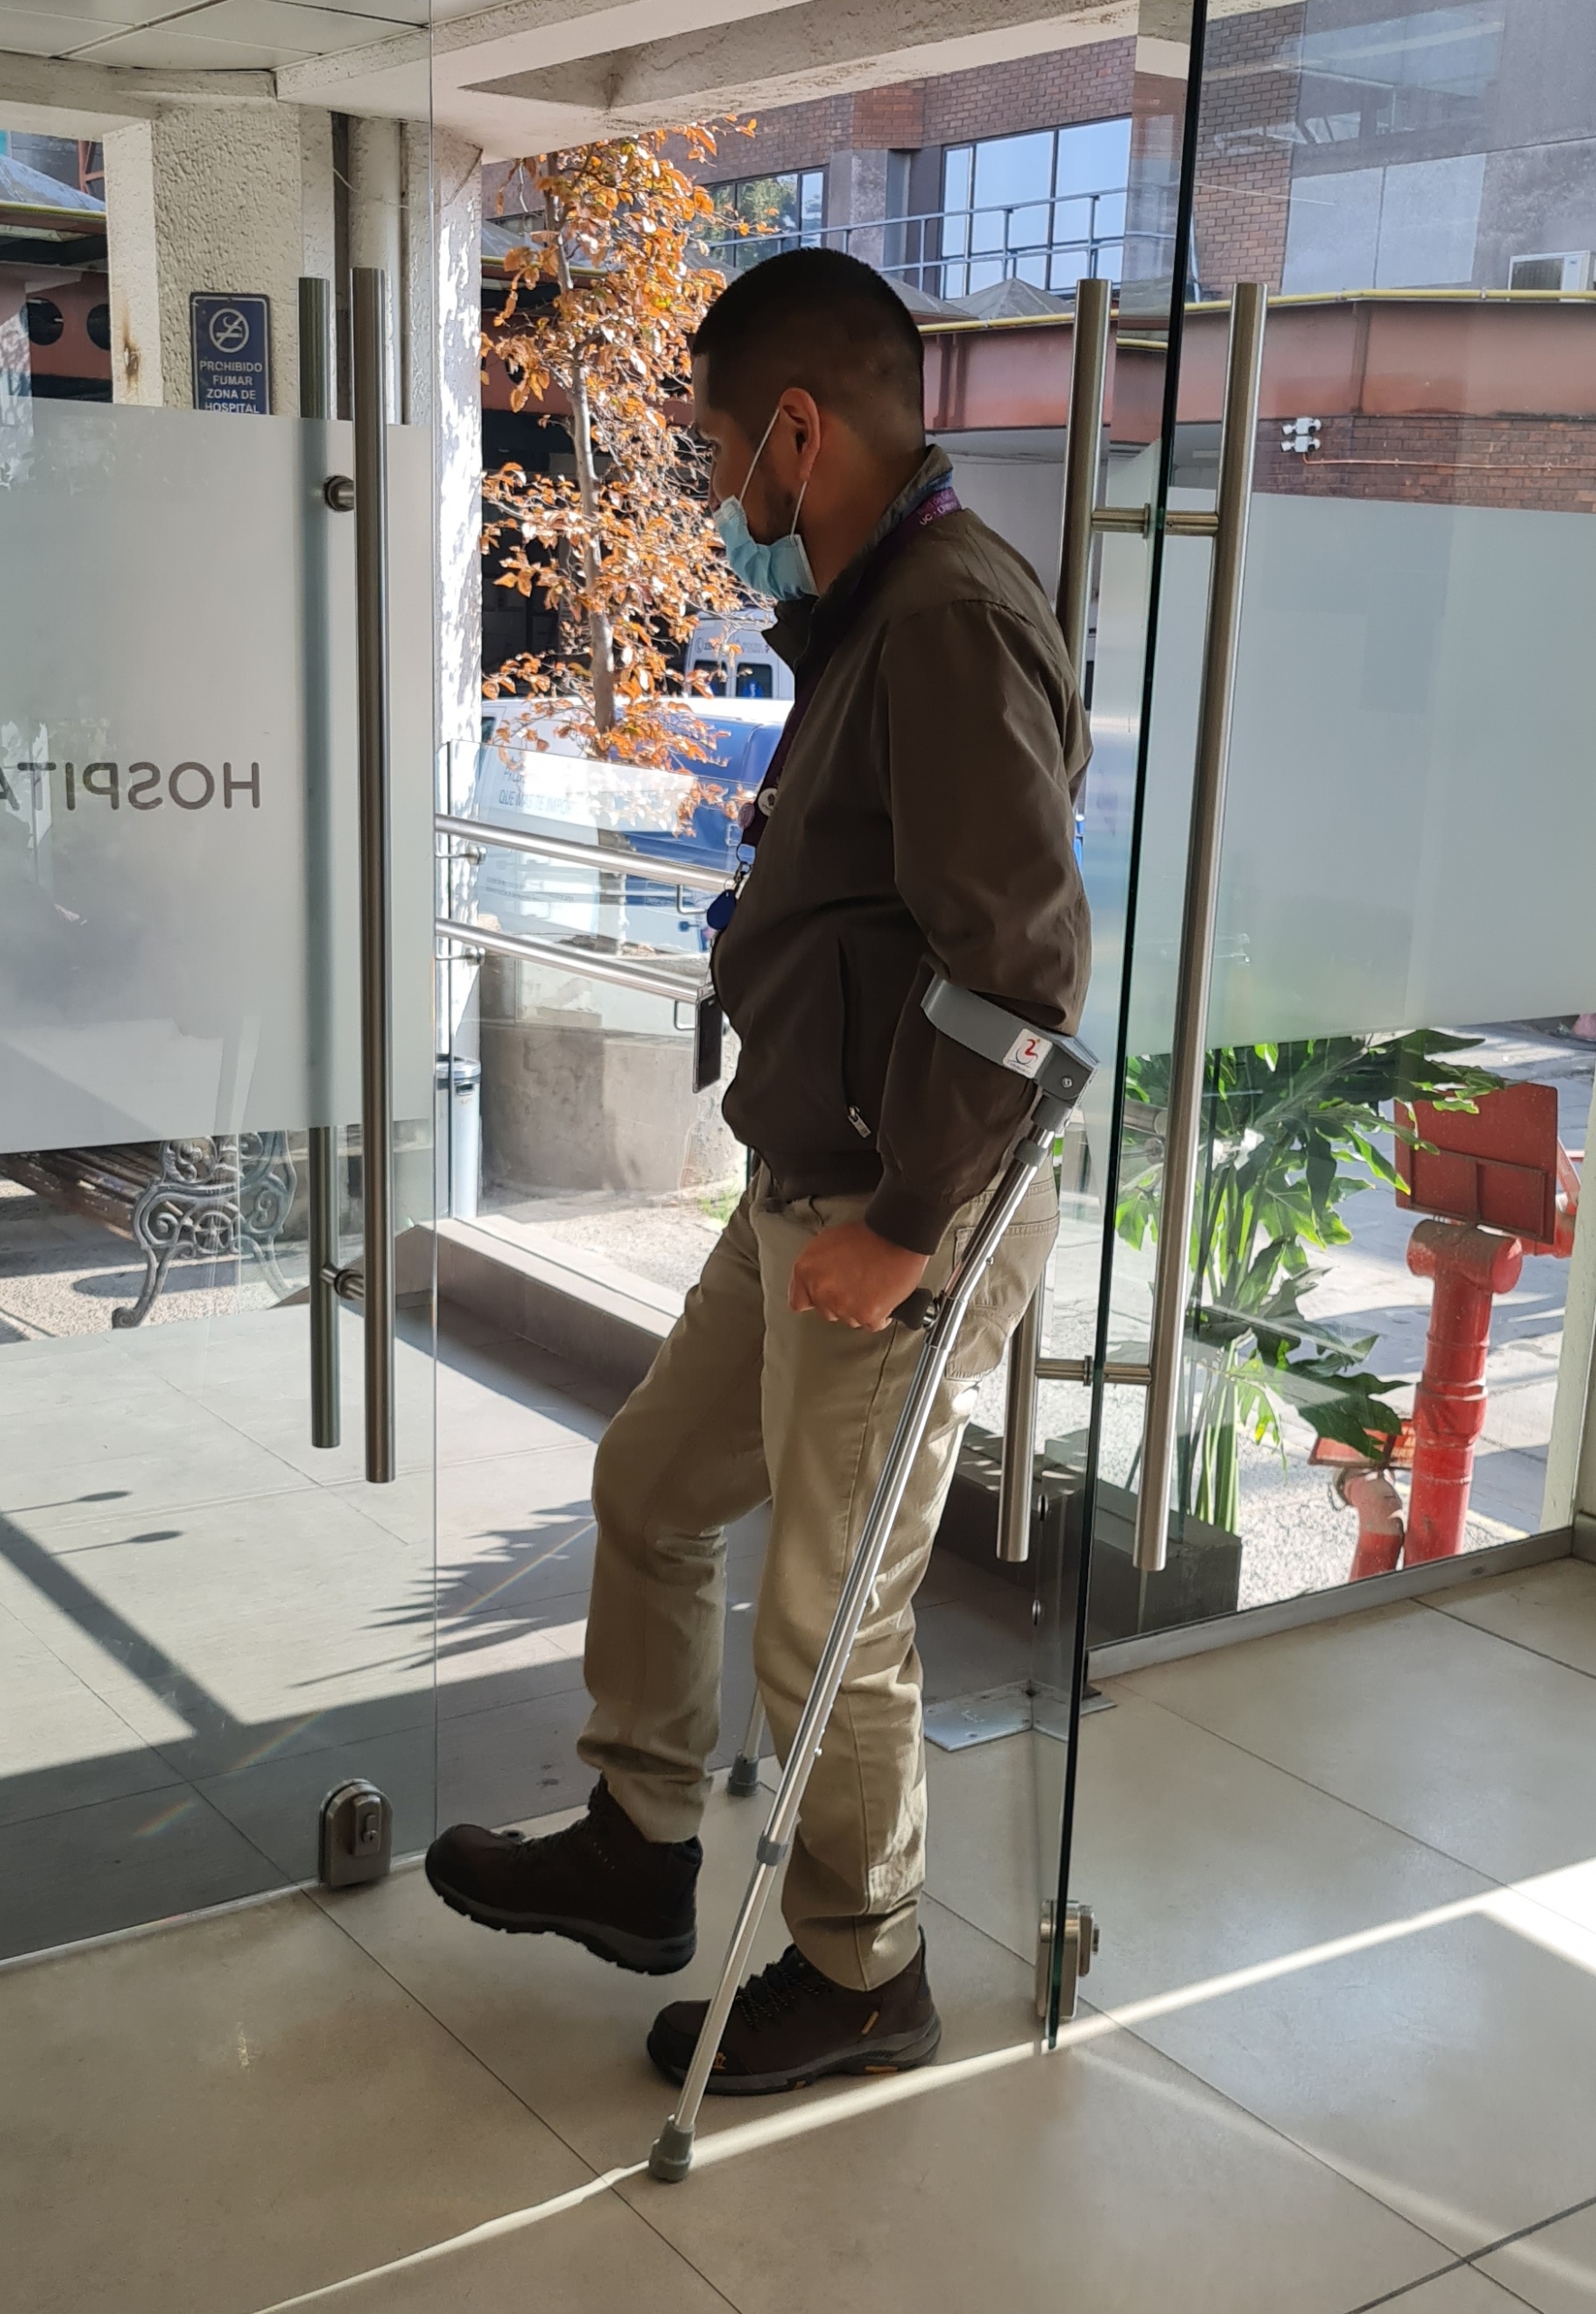 Un hombre intenta abrir una pesada puerta de vidrio usando bastones de apoyo en ambas manos